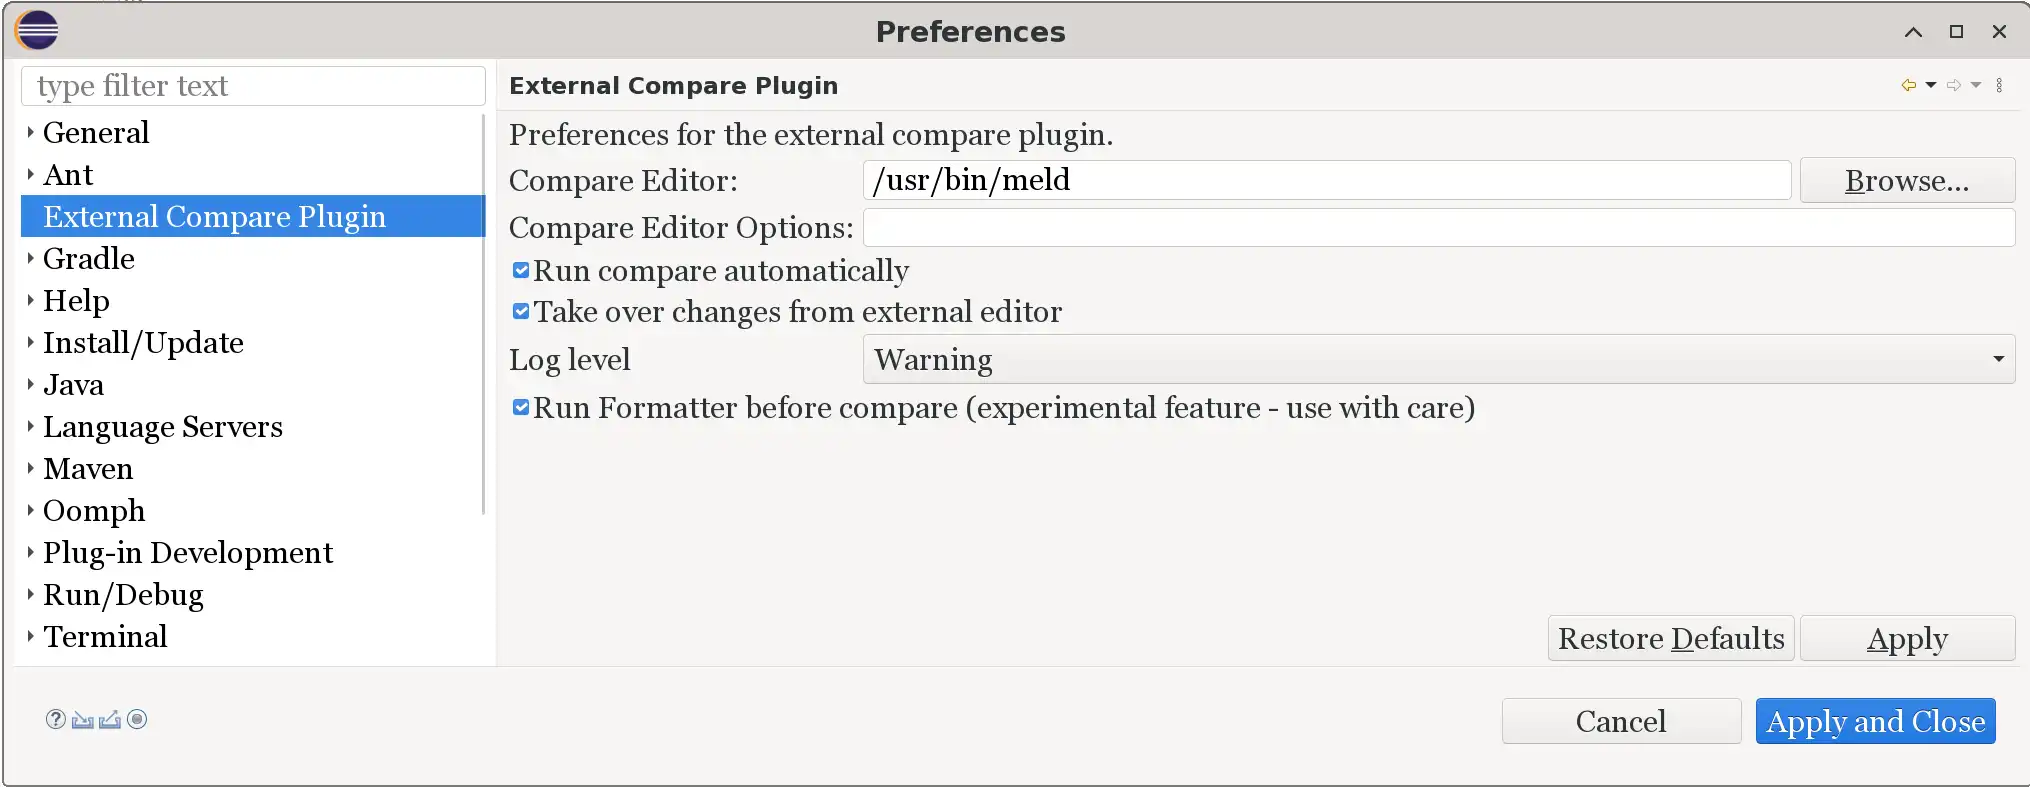 Télécharger l'outil Web ou l'application Web Comparaison externe - Plugin Eclipse